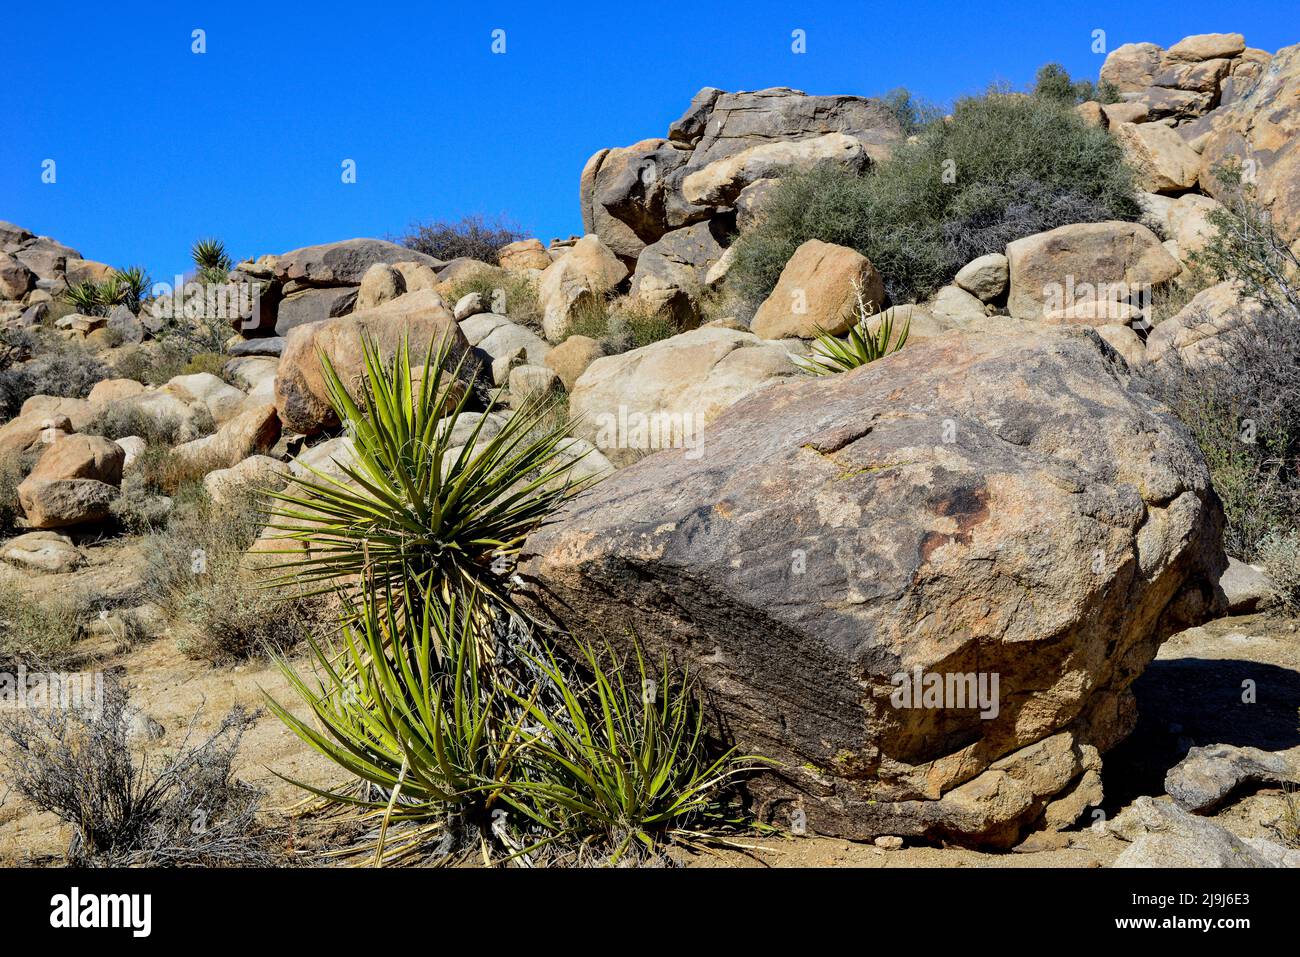 El único Parque Nacional Joshua Tree, salpicado de cactus y árboles de Josué, entre formaciones rocosas de erupciones y erosión, en el desierto de Mojave, CA Foto de stock